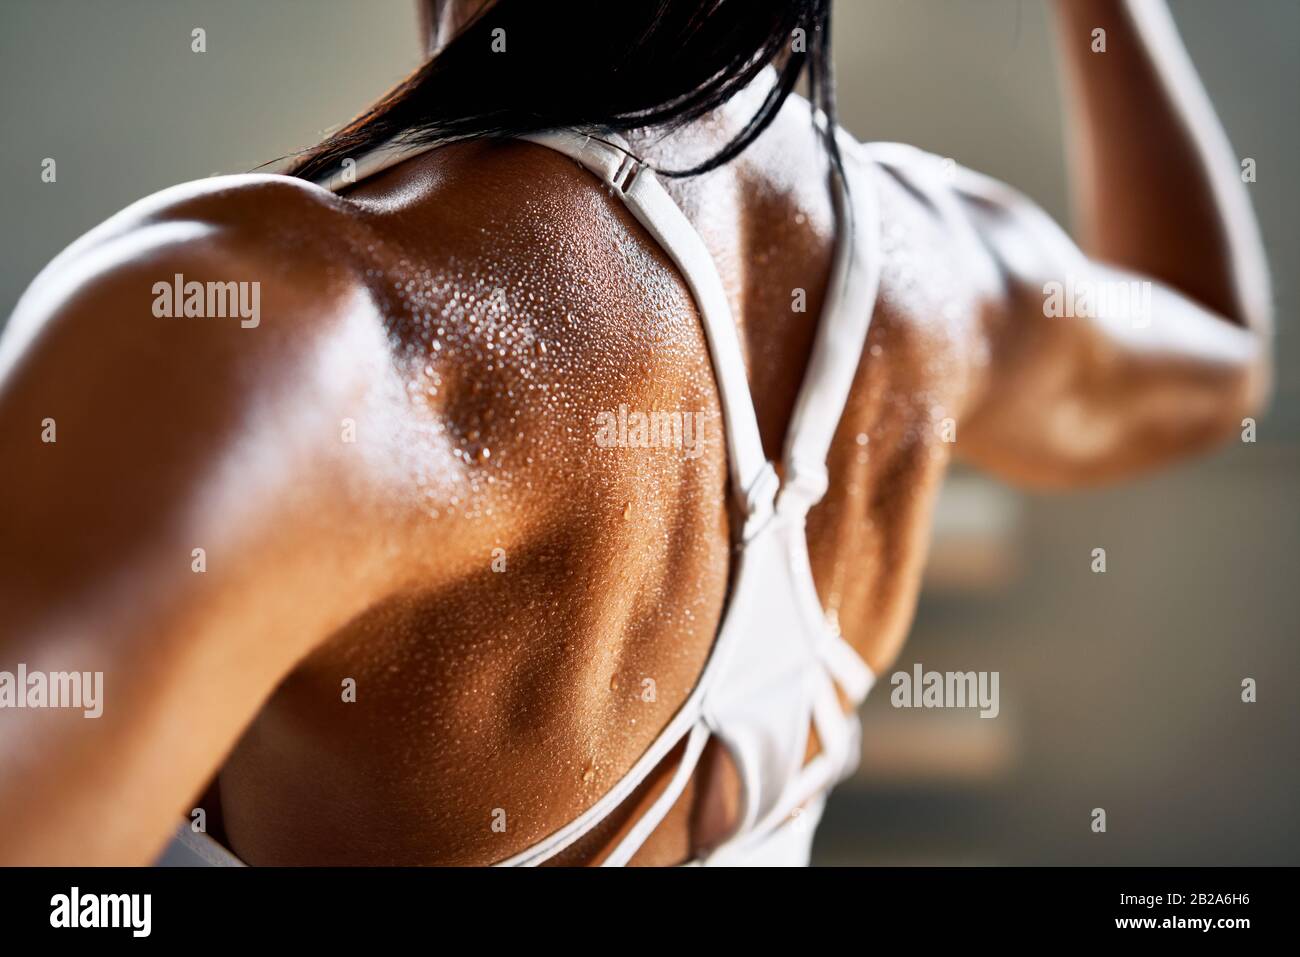 Primo piano della donna con la flessione dei muscoli nel sudore sulla pelle dopo l'allenamento. Bodybuilder femminile con bicipite perfetto Foto Stock